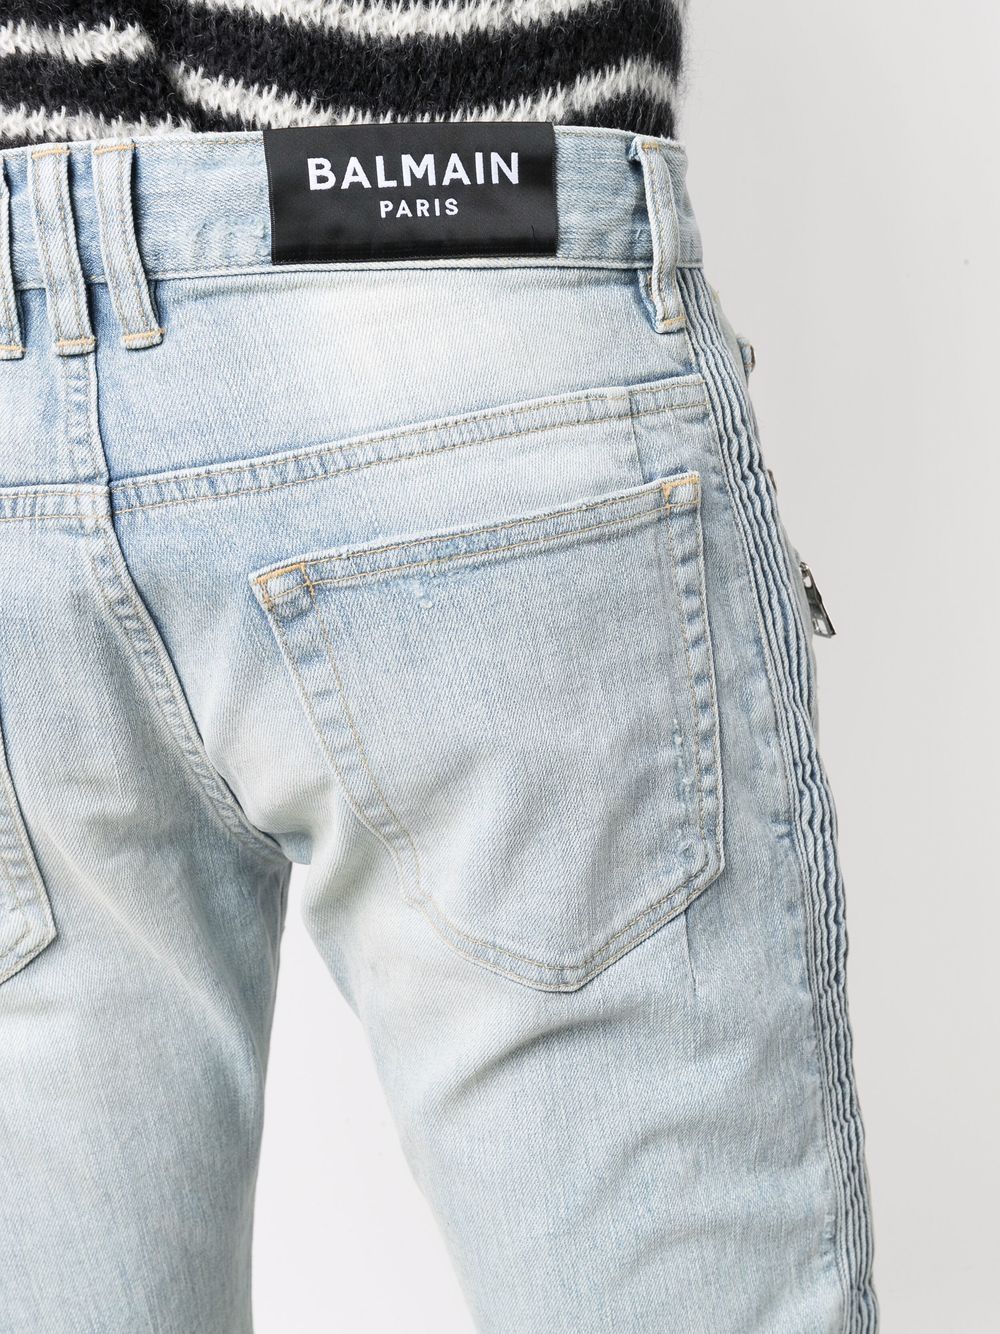 фото Balmain джинсы кроя слим со вставками